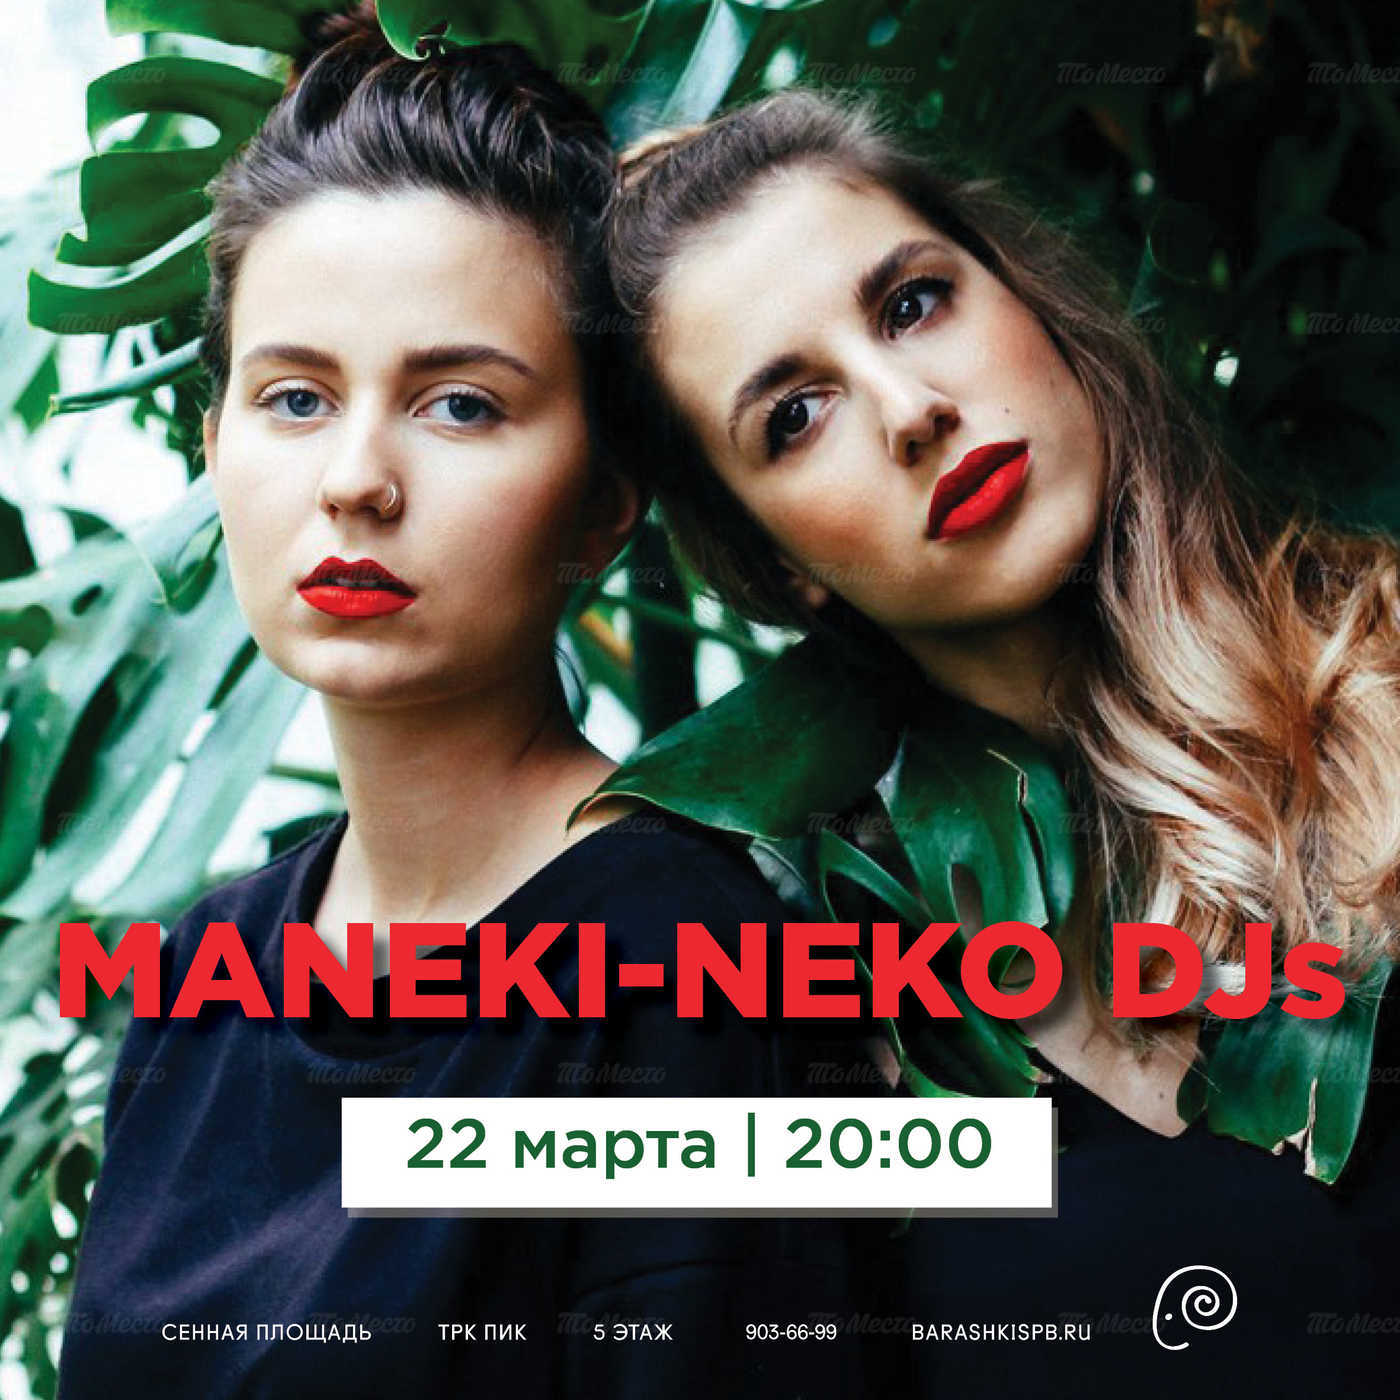 DJ-сет MANEKI-NEKO DJs